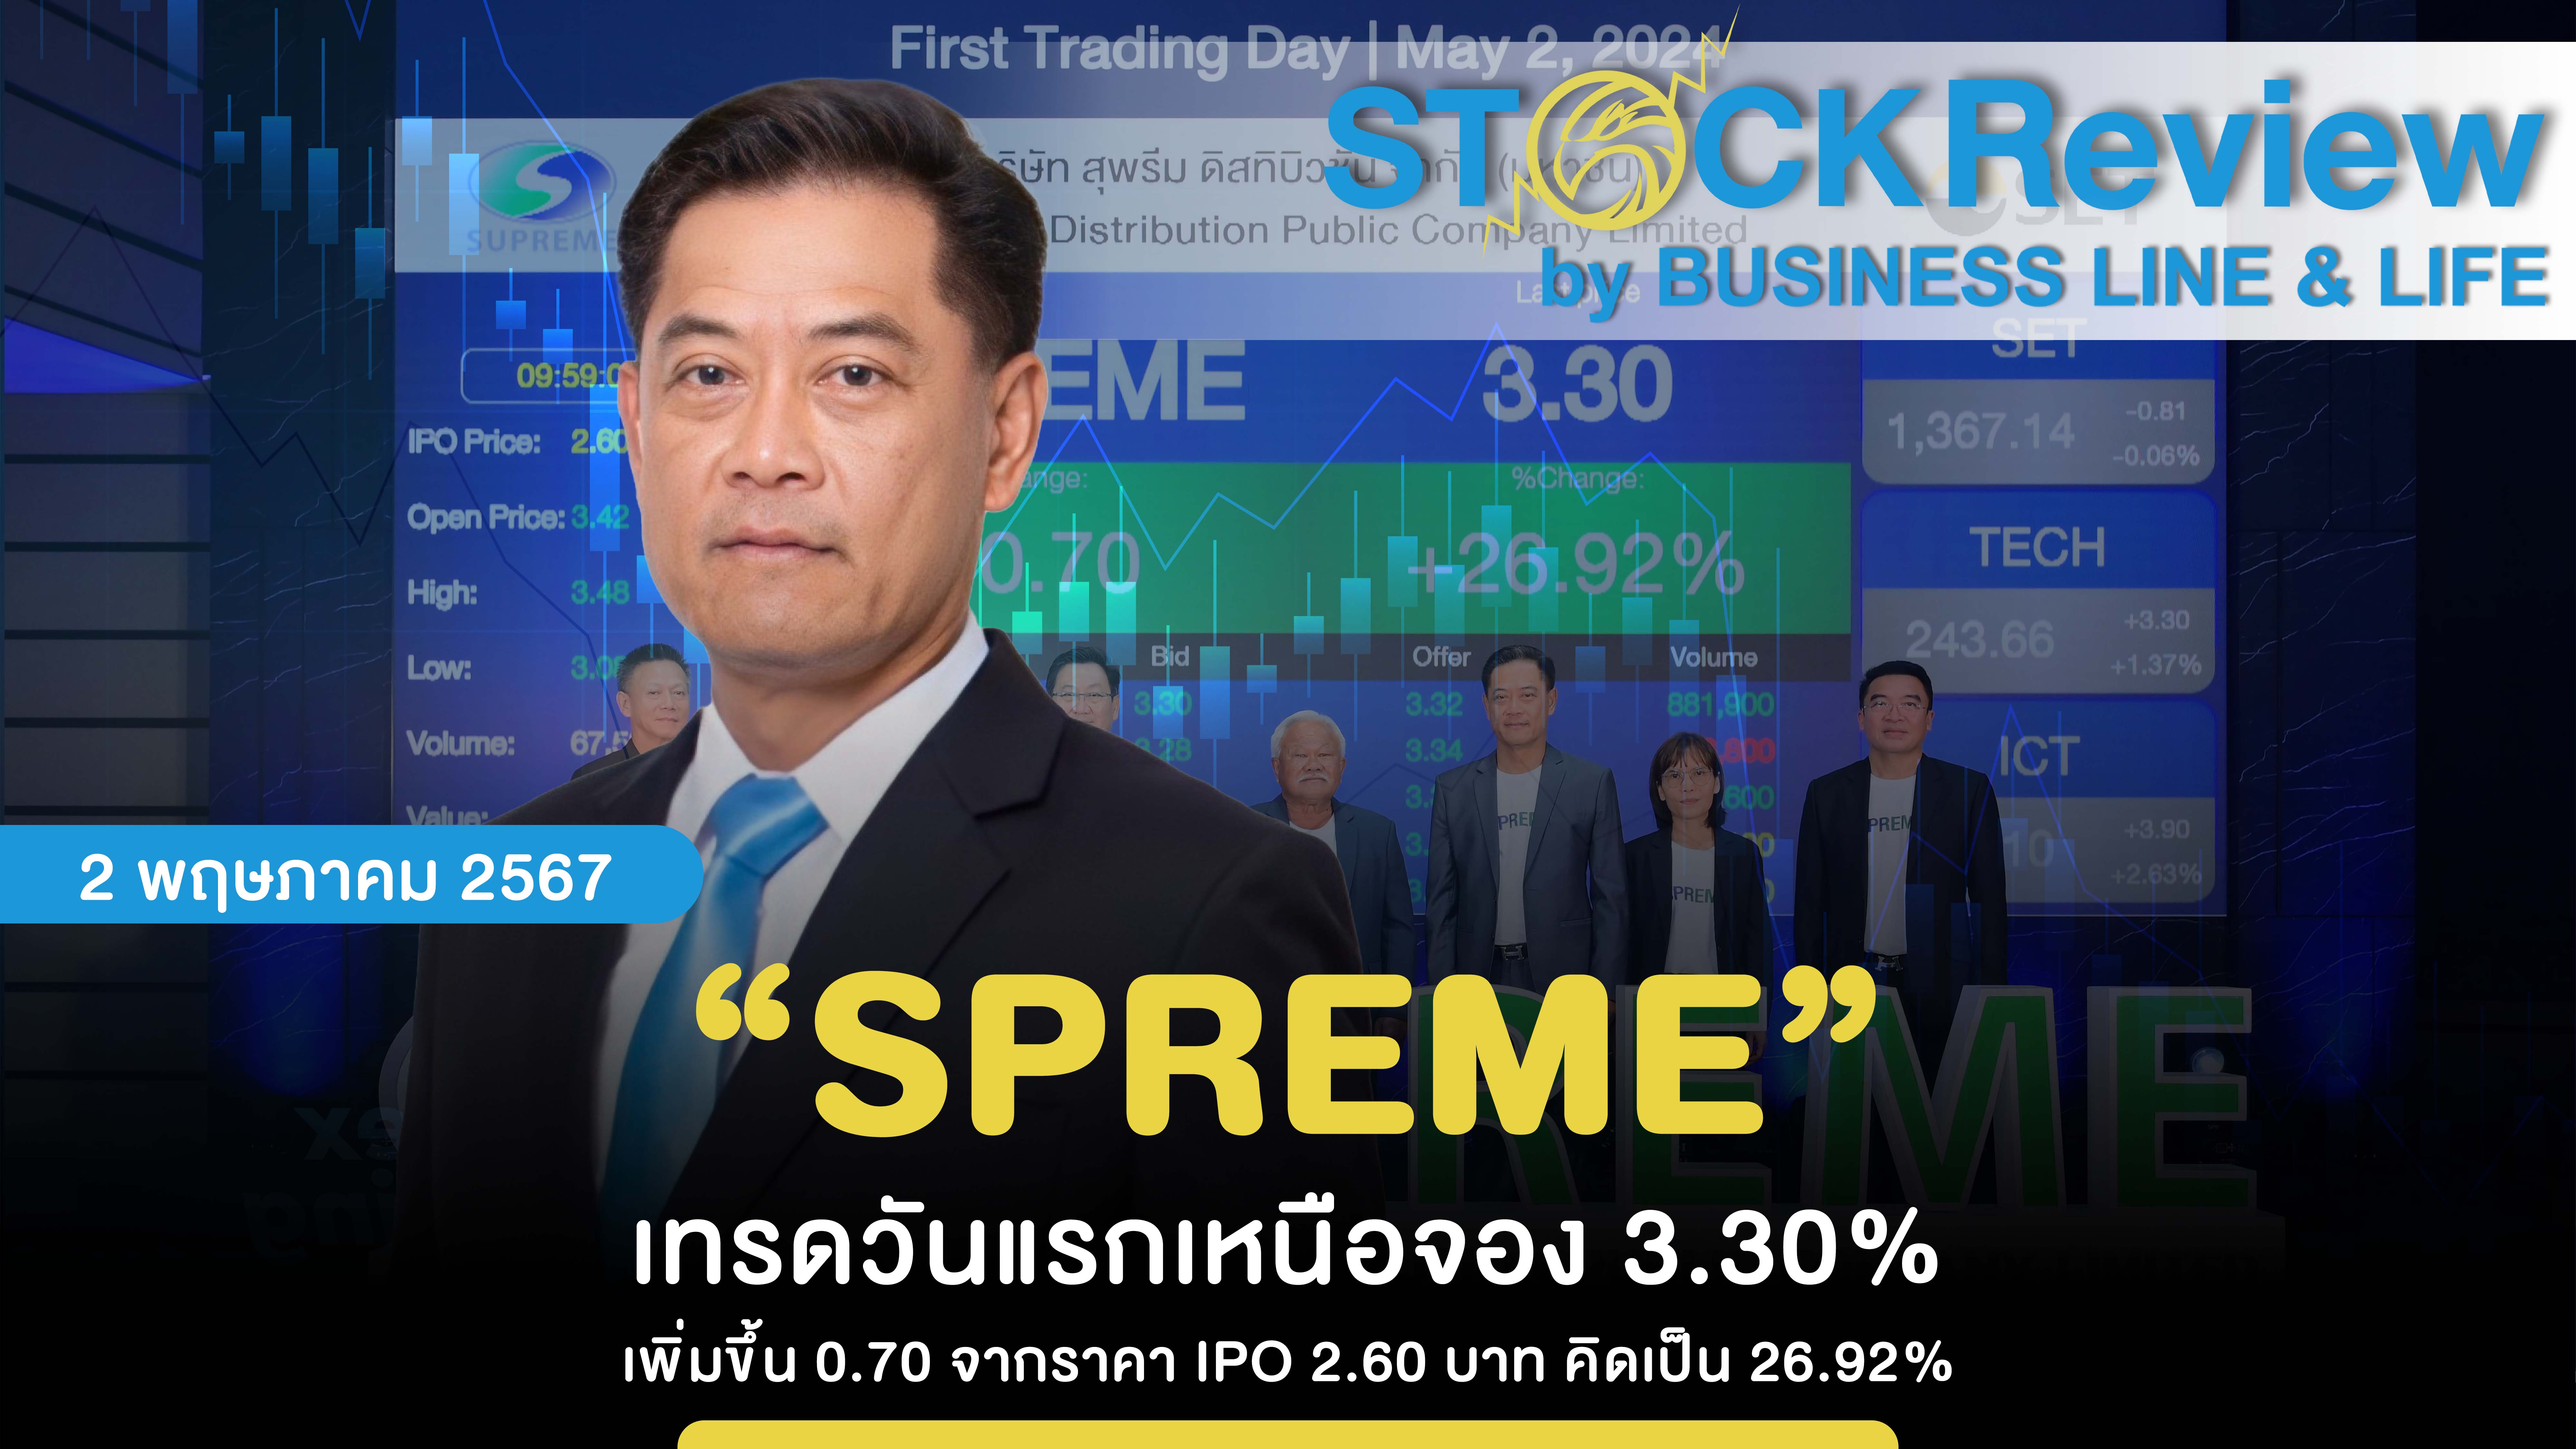 “SPREME” เทรดวันแรกเหนือจอง 3.30% เพิ่มขึ้น 0.70 จากราคา IPO 3.42 บาท คิดเป็น 26.92%